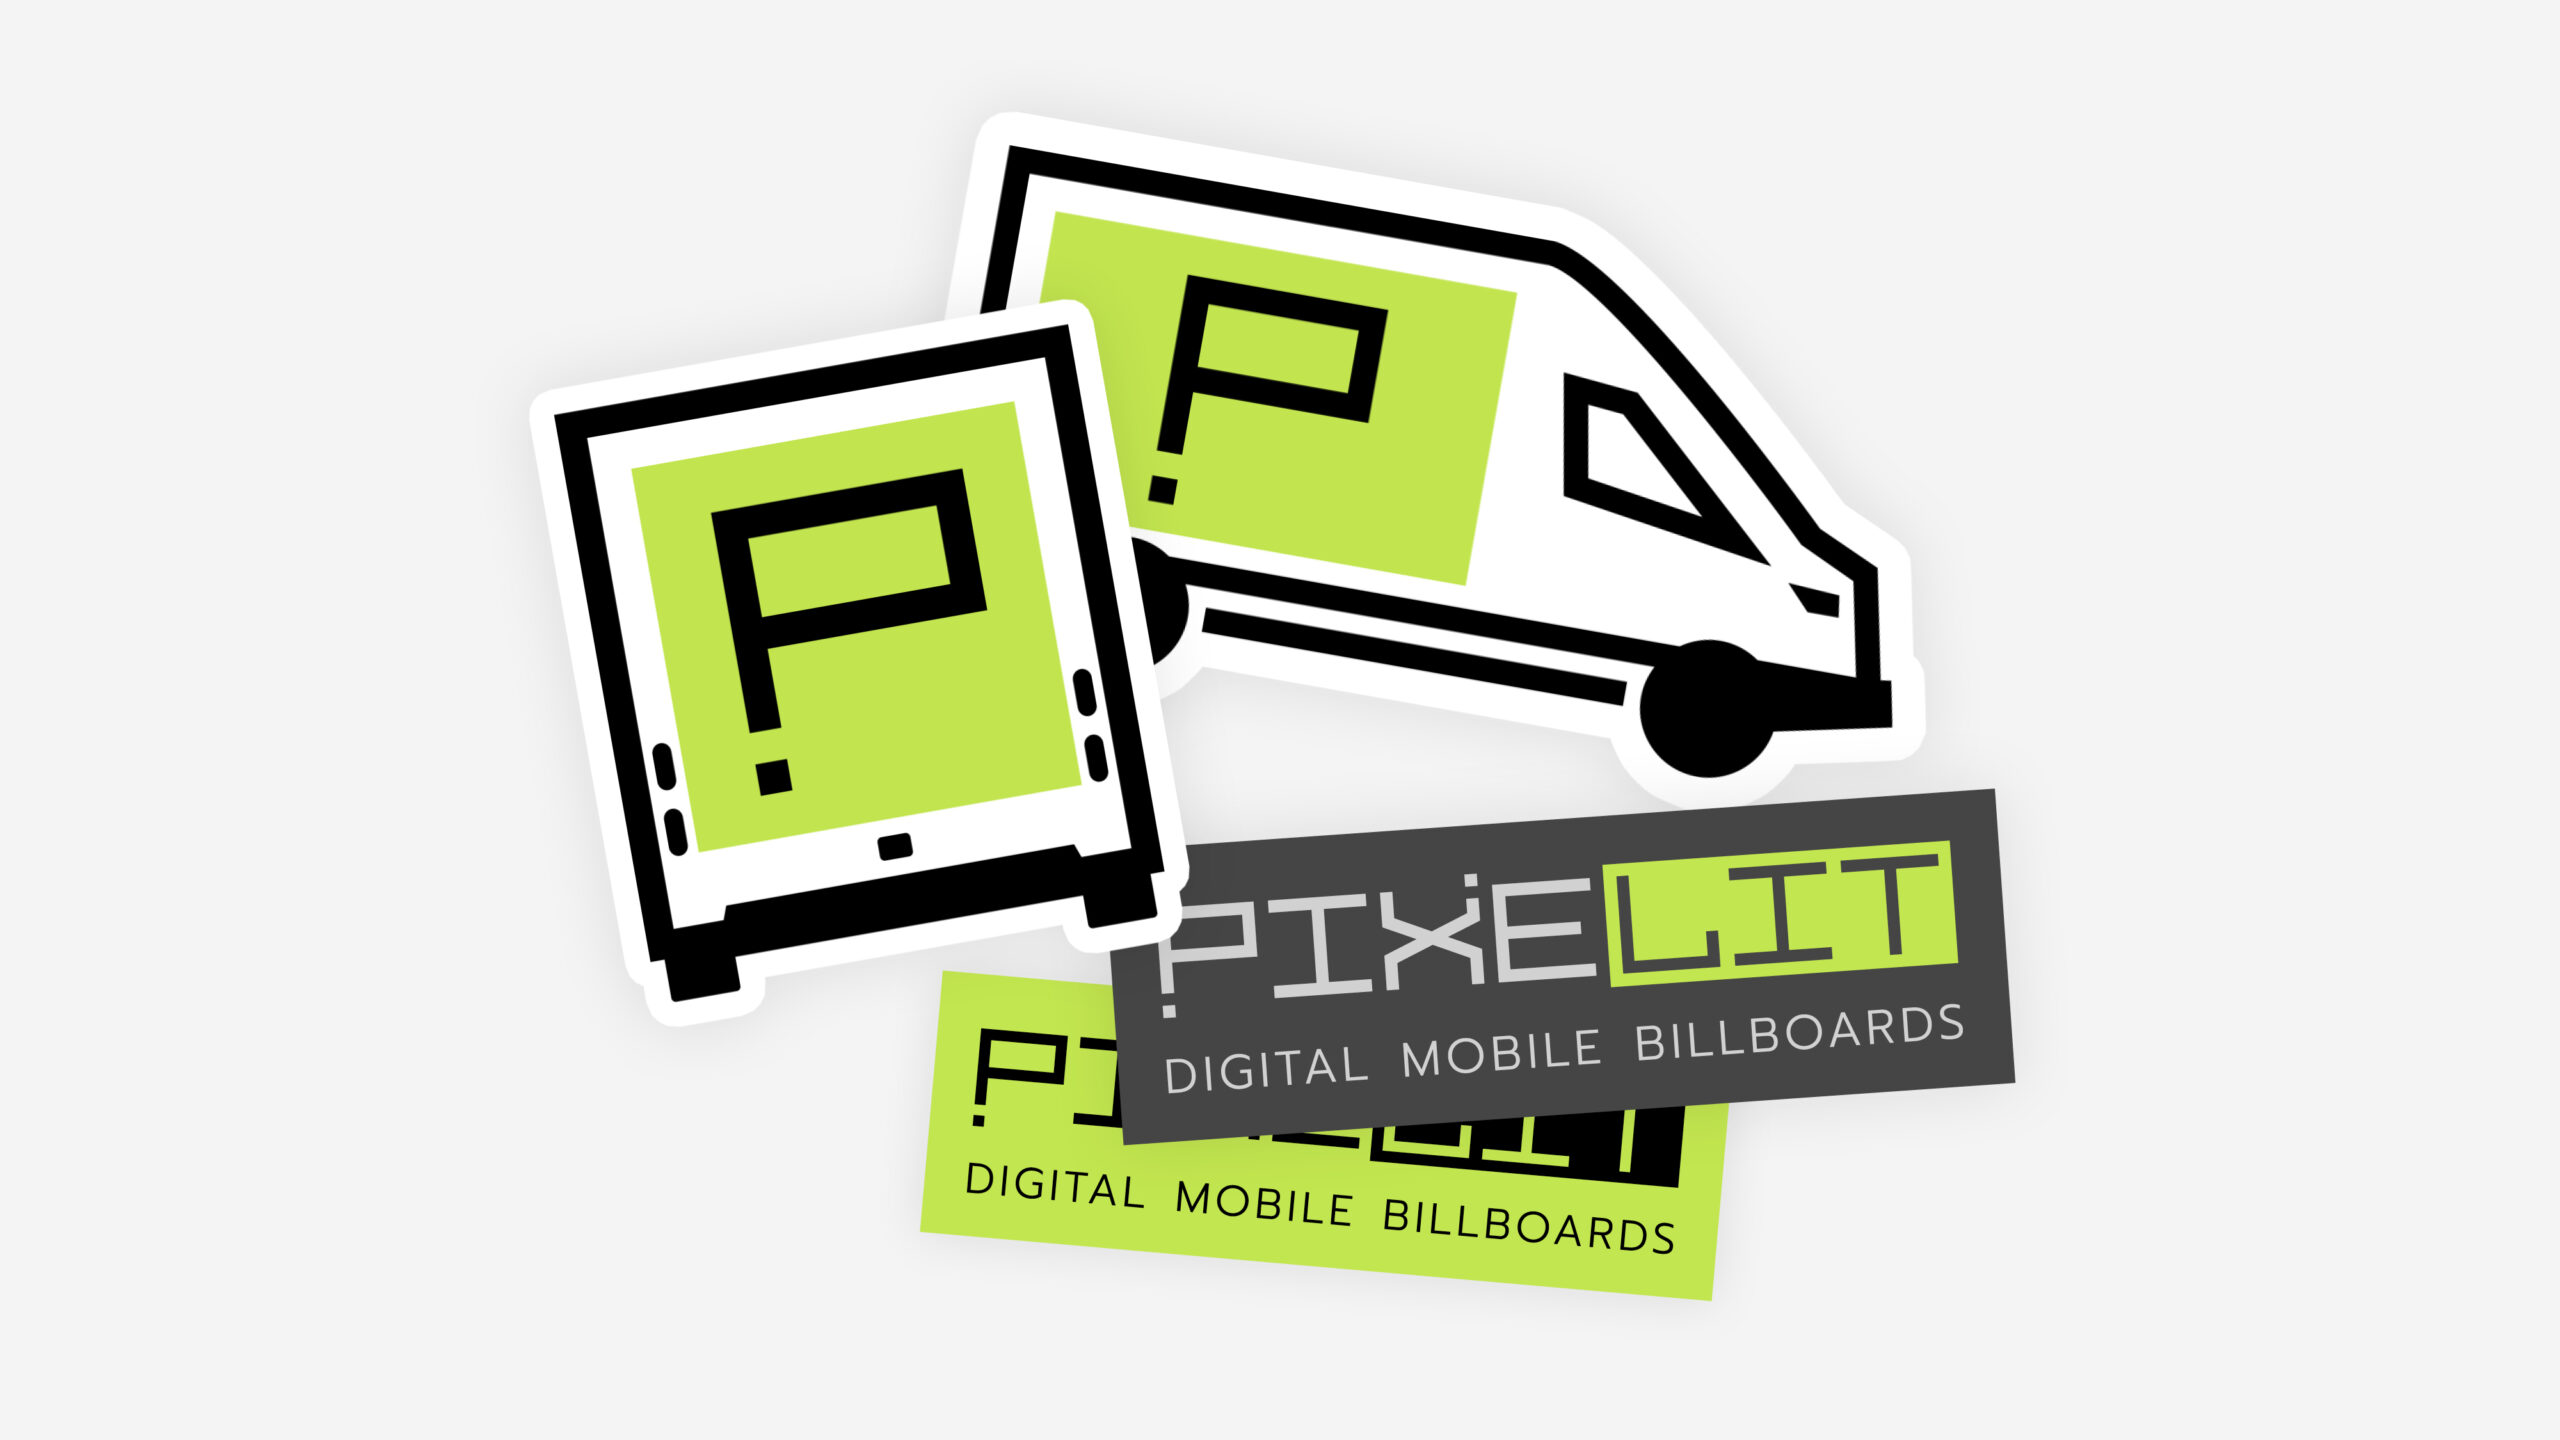 CCG-PIXELIT-stickers-scaled.jpg